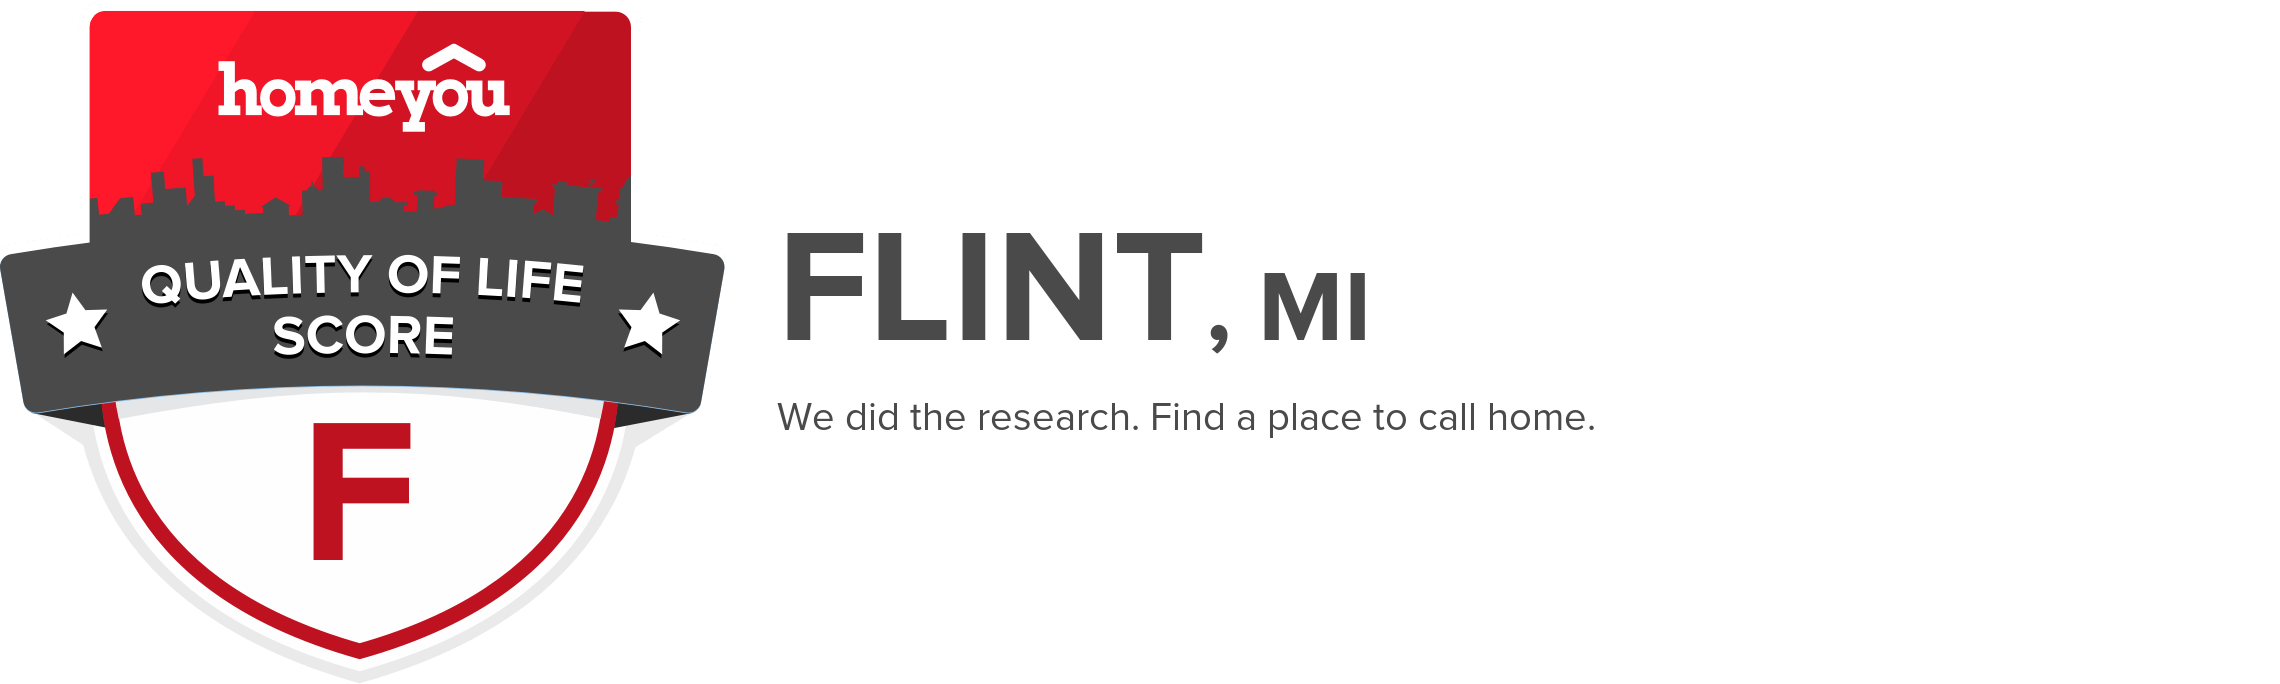 Flint, MI